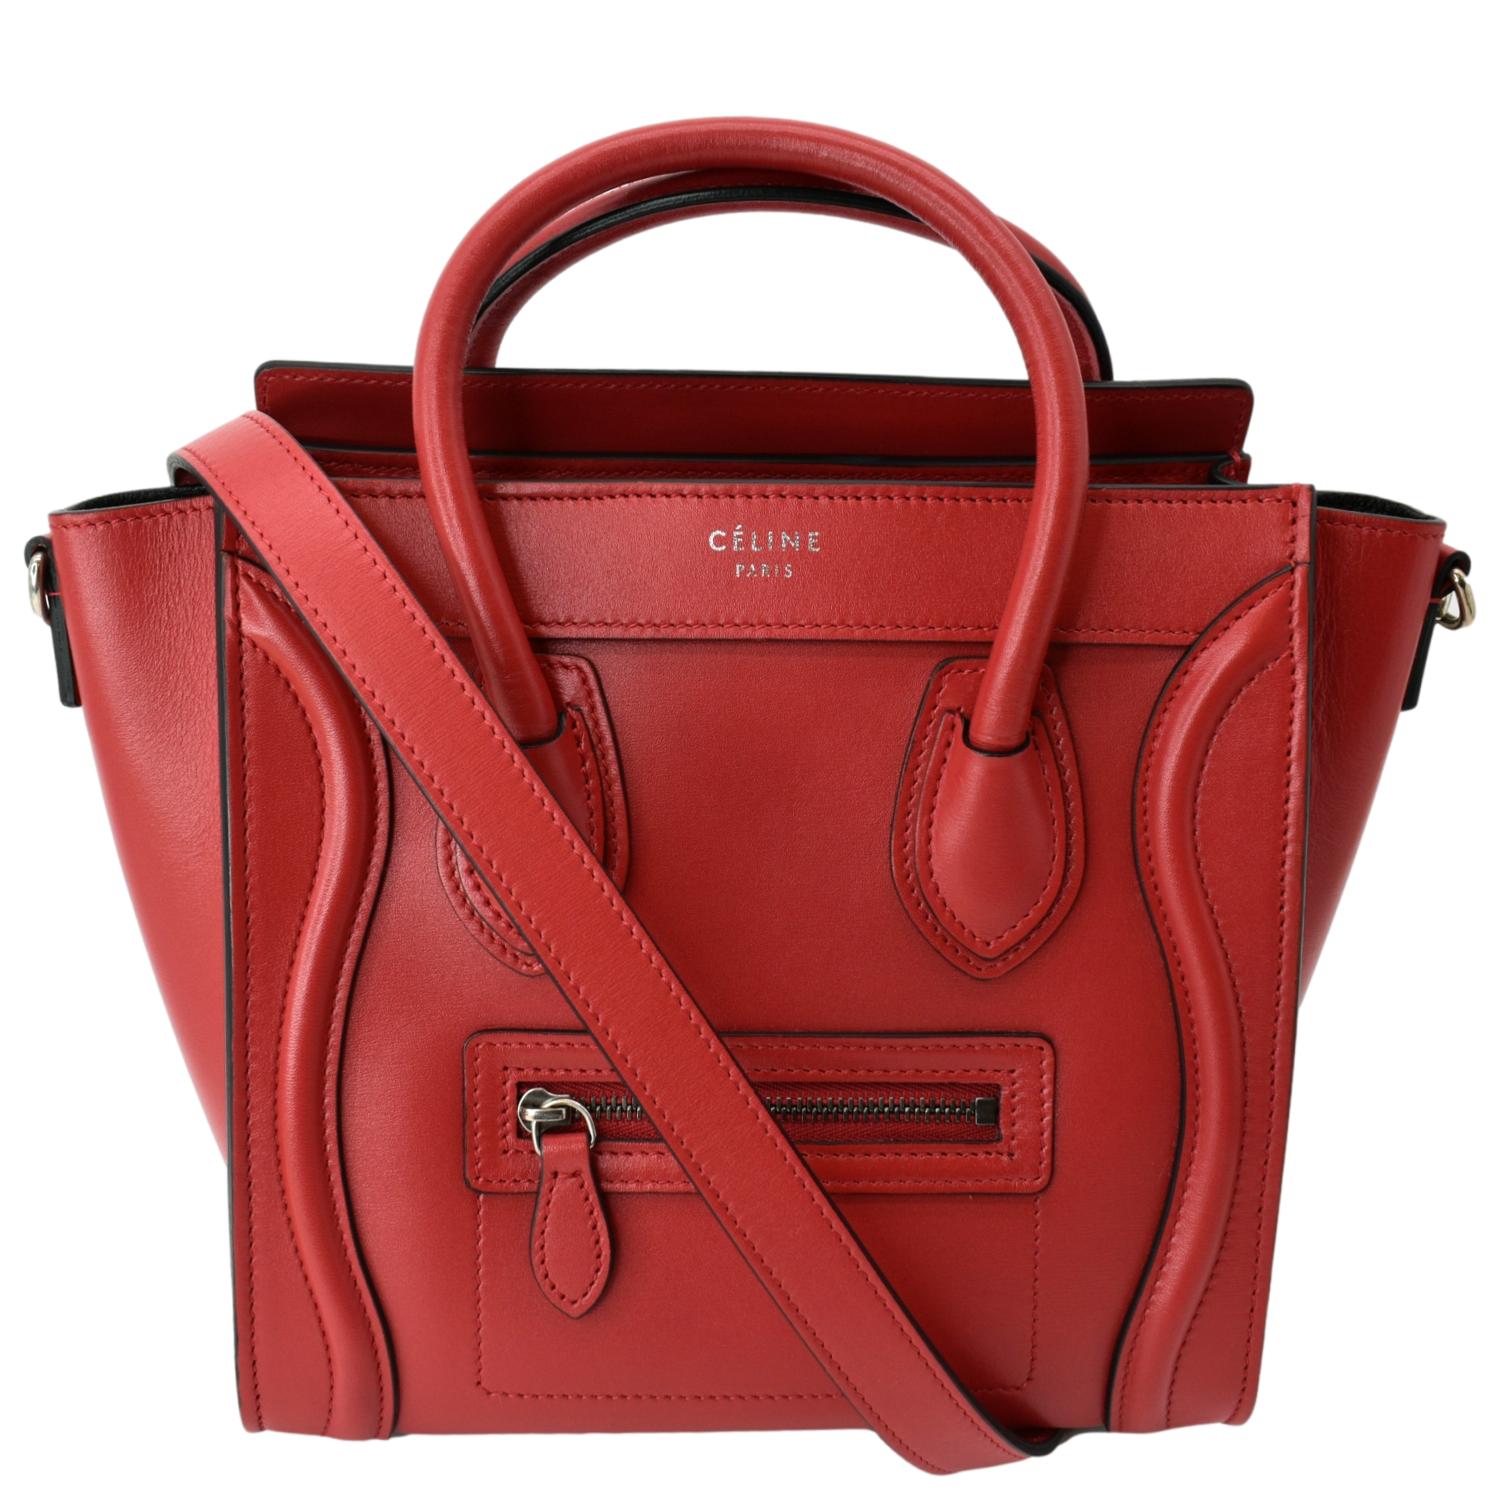 Celine Red Leather Mini Luggage Bag - Vintage Lux